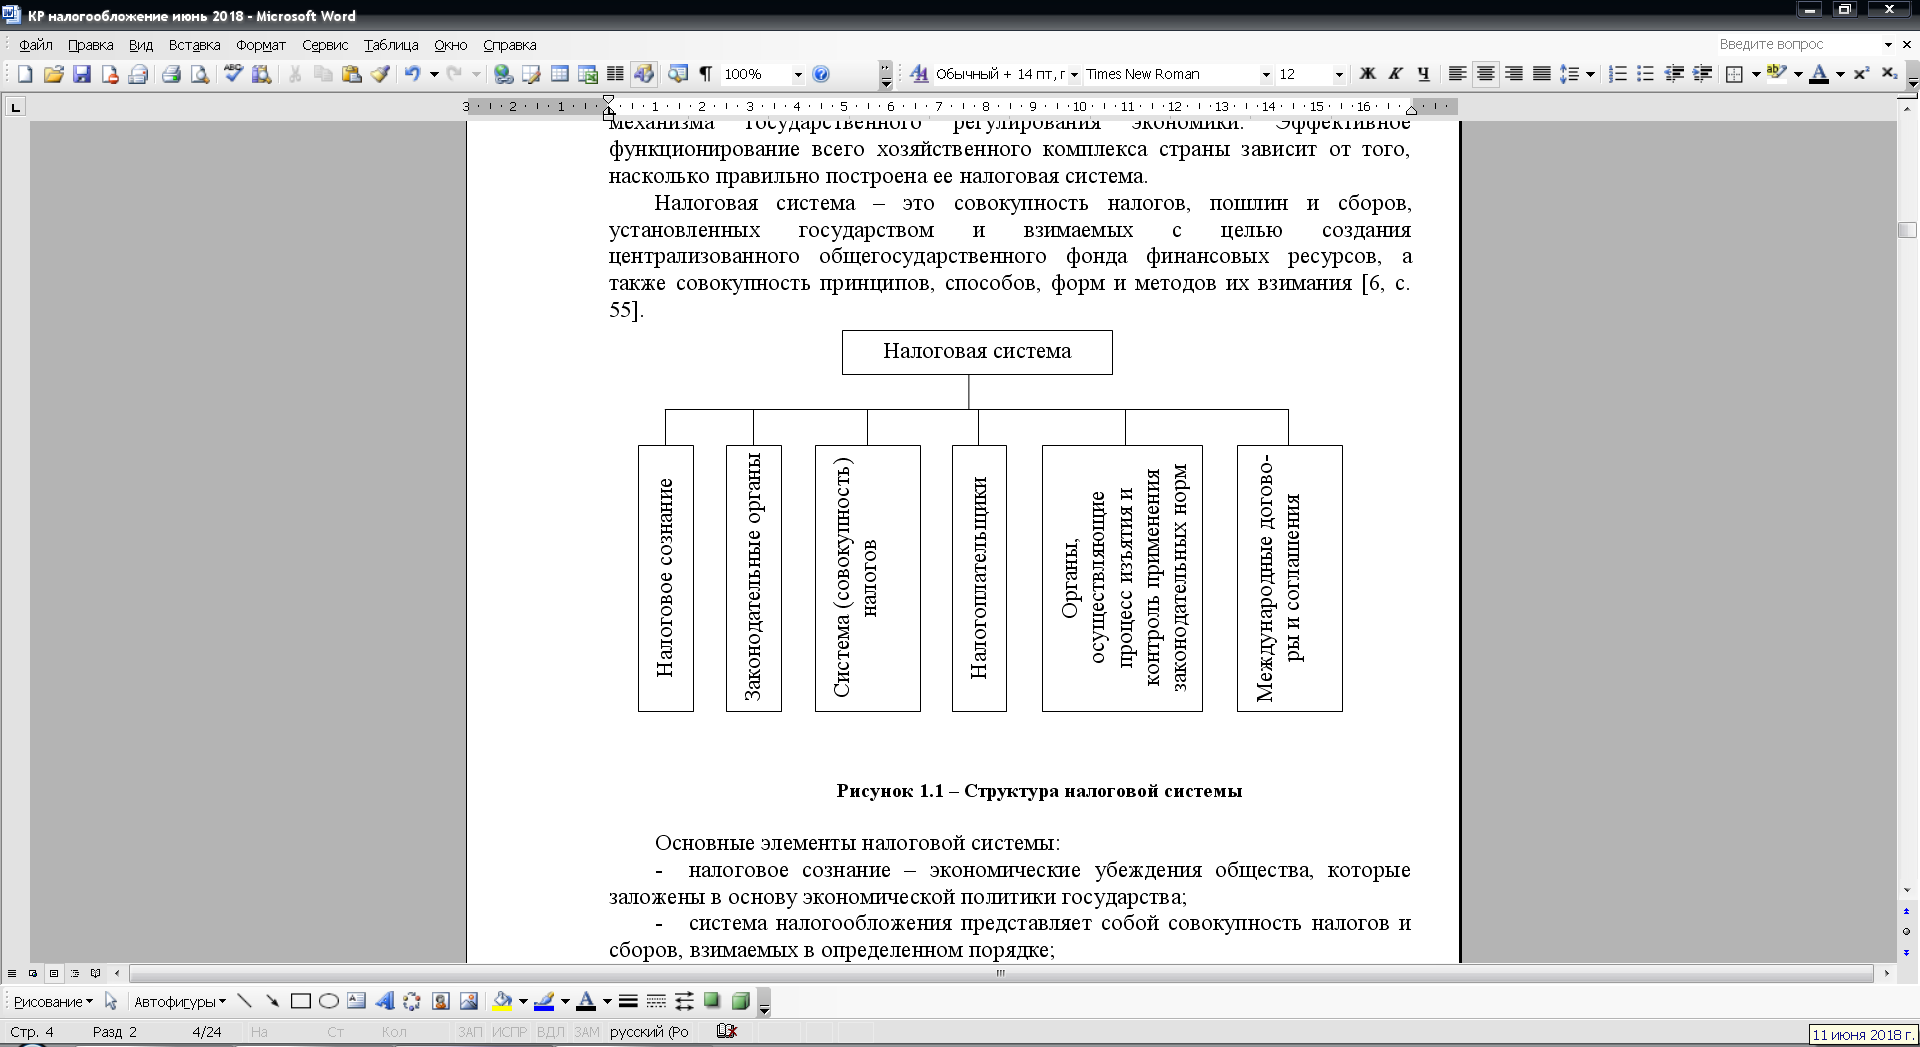 Контрольная работа по теме Сущность налогов, их функции. Налоговая система Республики Беларусь